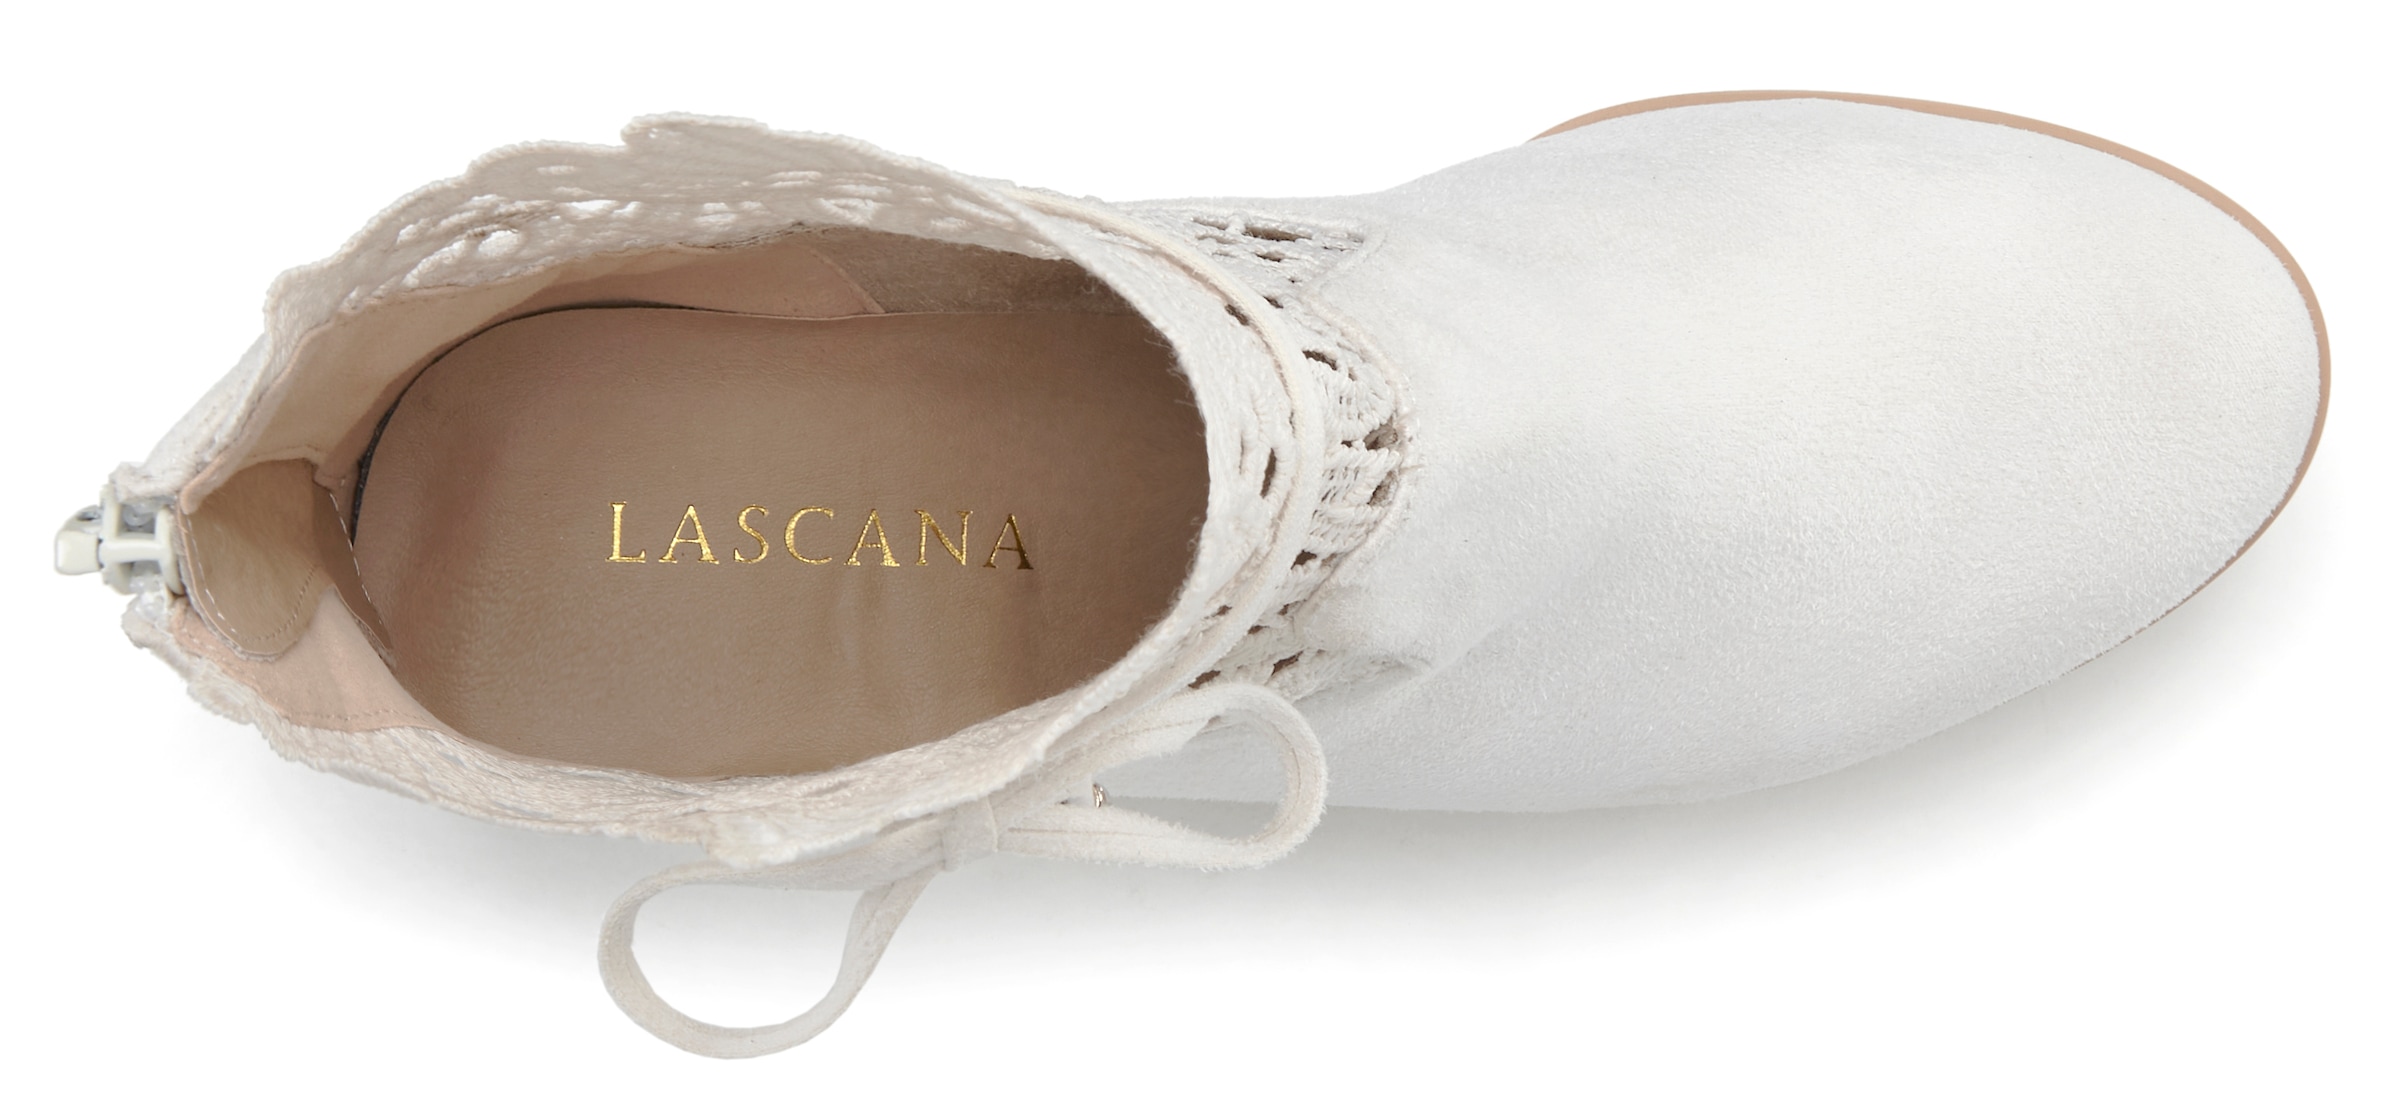 LASCANA High-Heel-Stiefelette, mit modischer Spitze und bequemen Blockabsatz, Ankle Boot, Stiefel